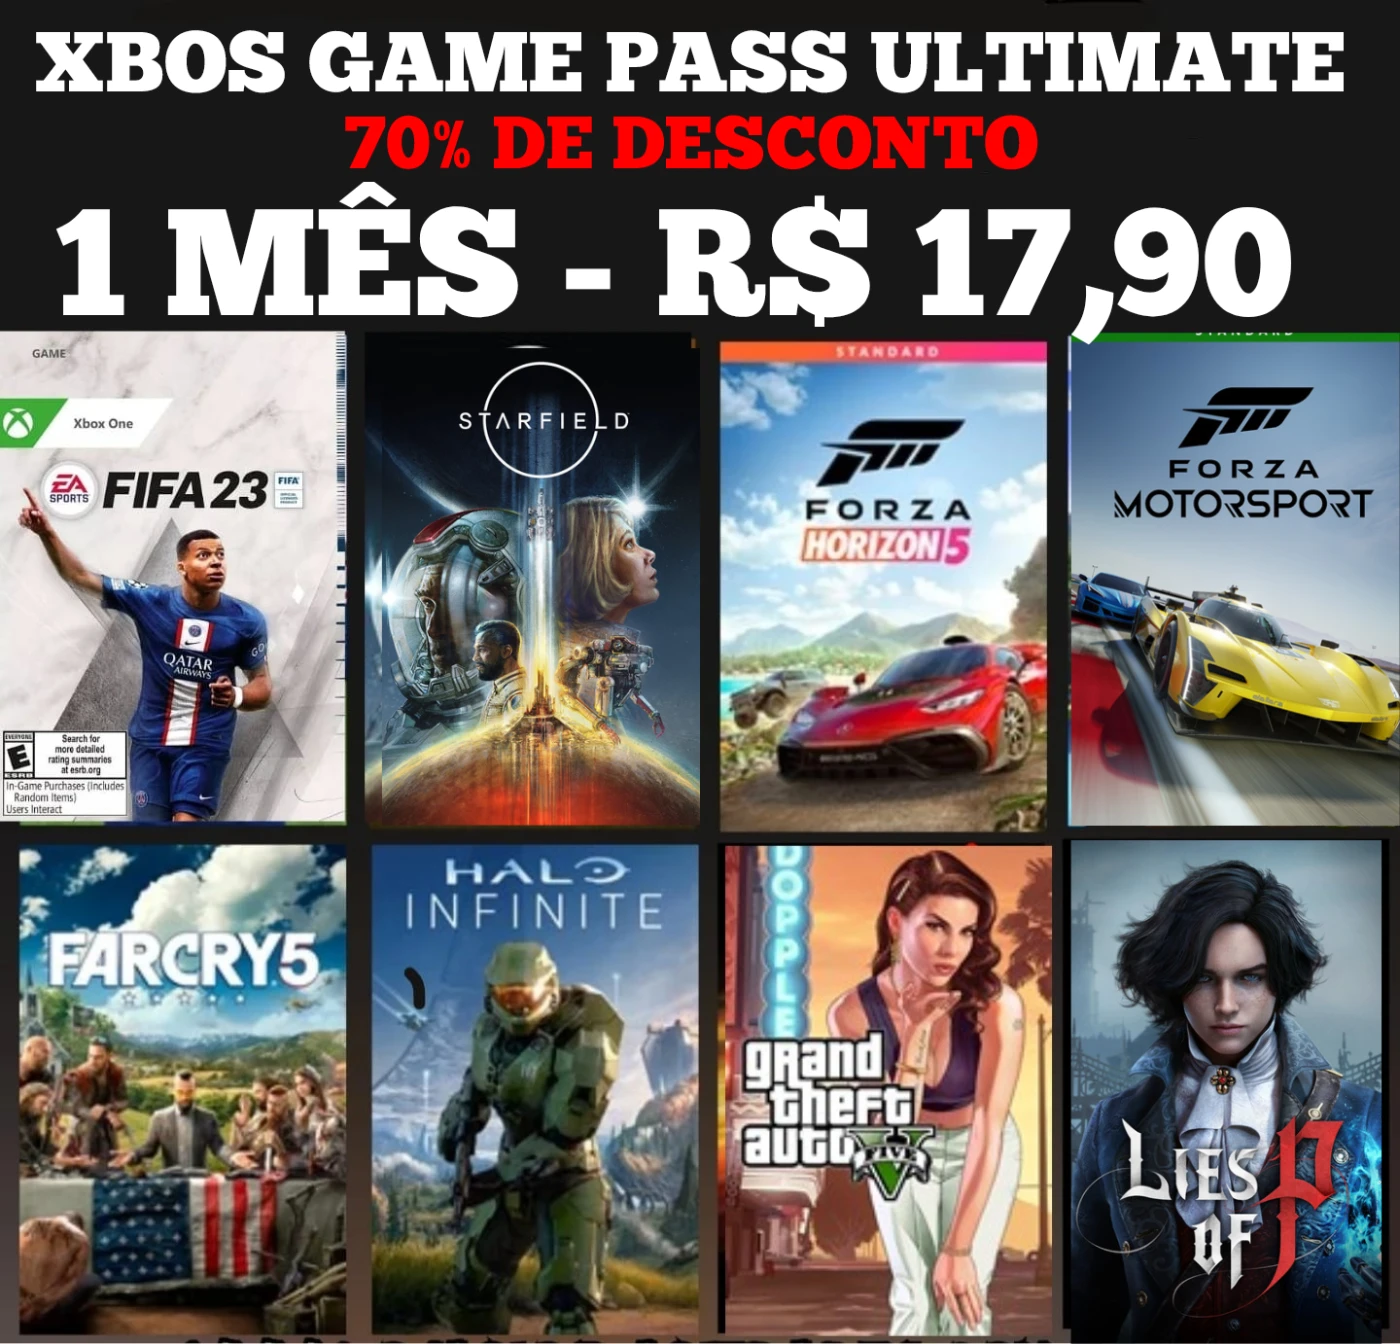 Novos Úsuarios] Game Pass Ultimate - 1 Mês em Promoção no Oferta